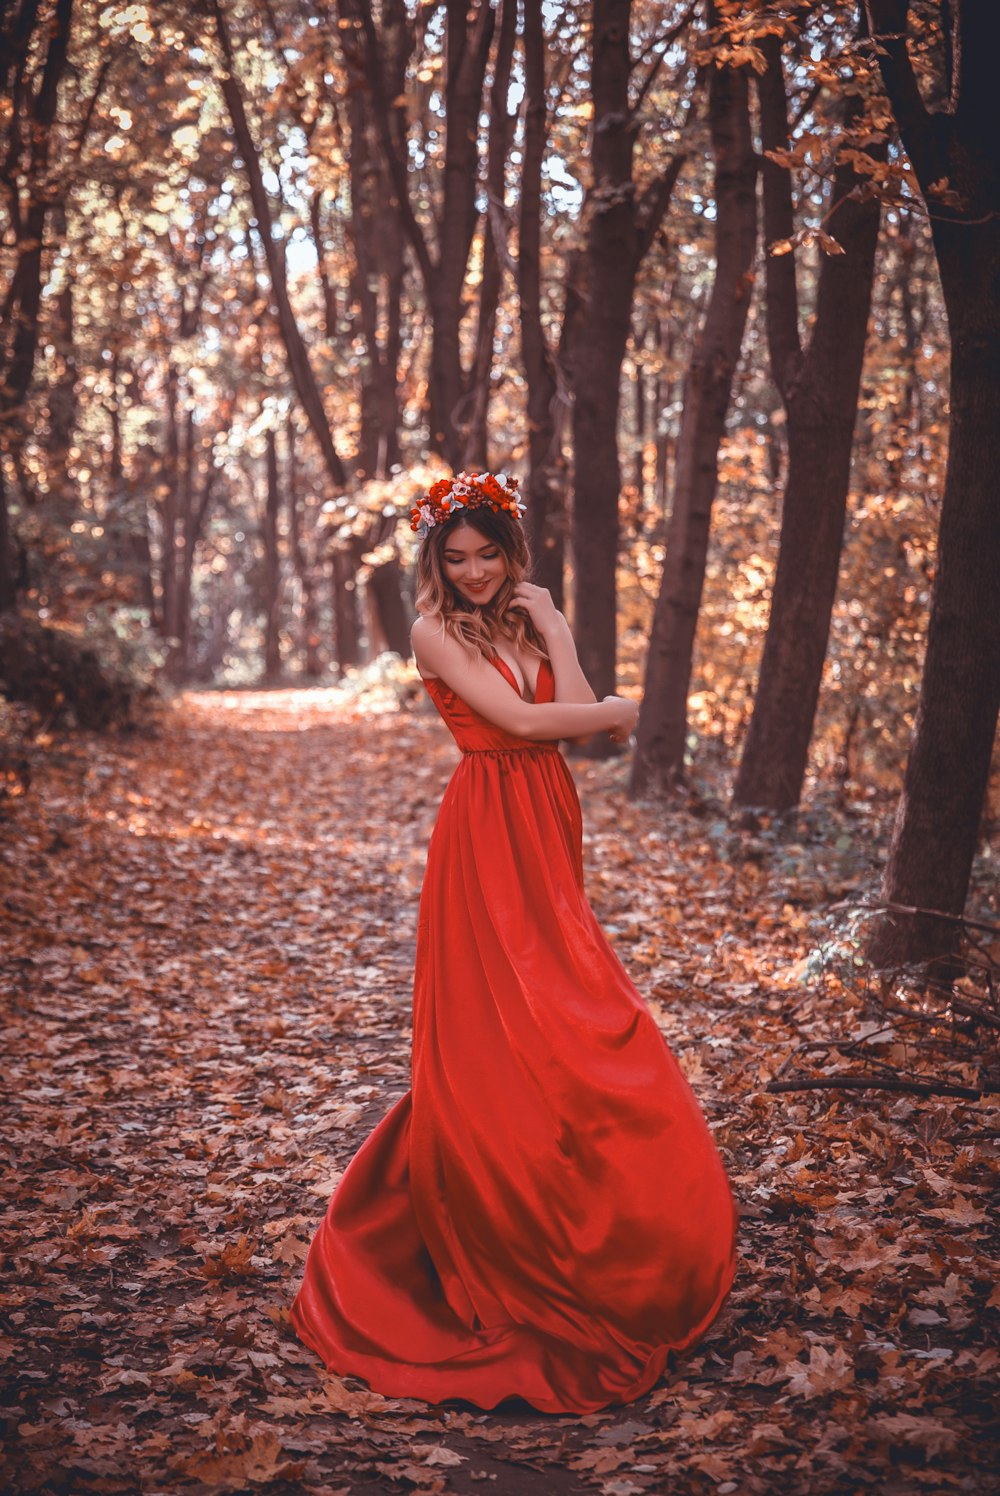 Frau im roten Kleid umgeben von Bäumen